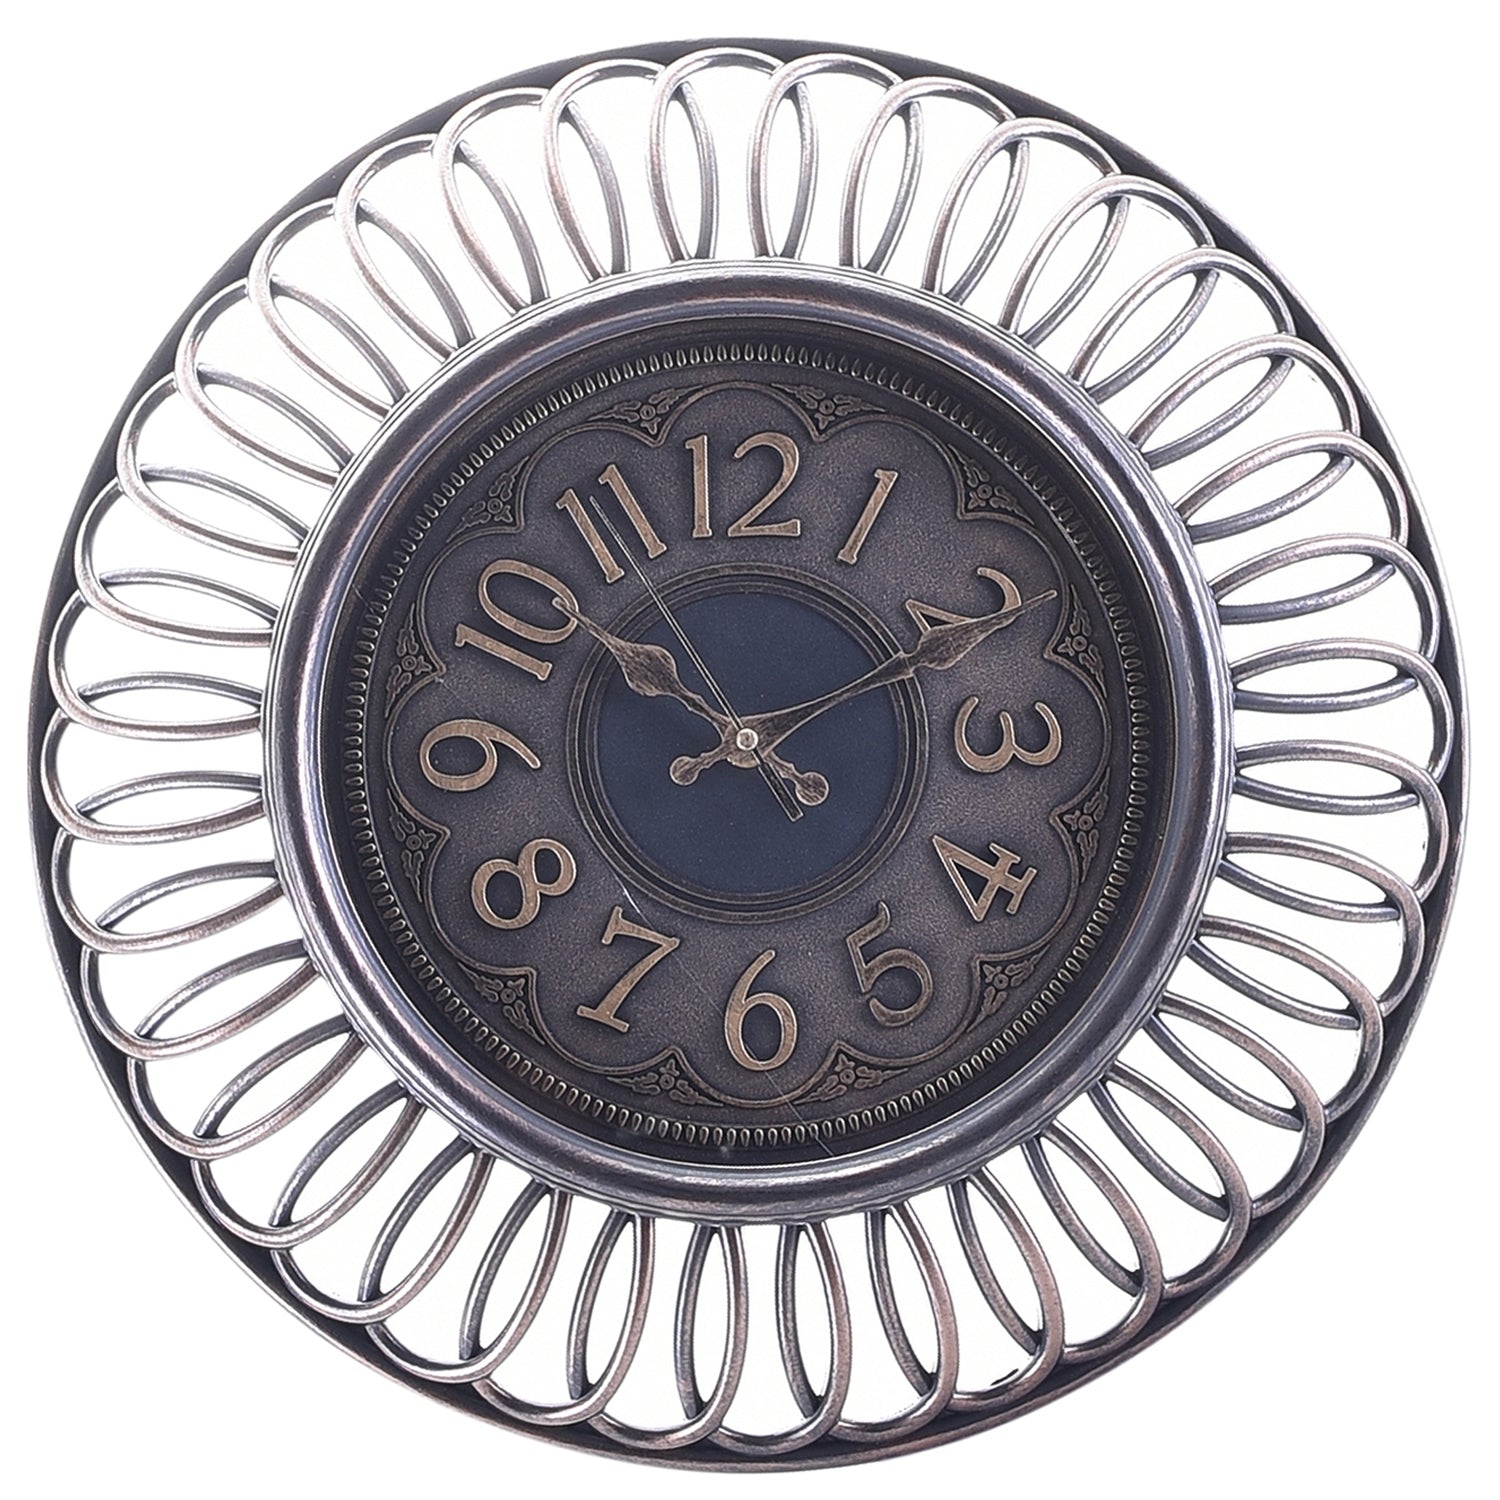 Premium Antique Design Analog Wall Clock 16